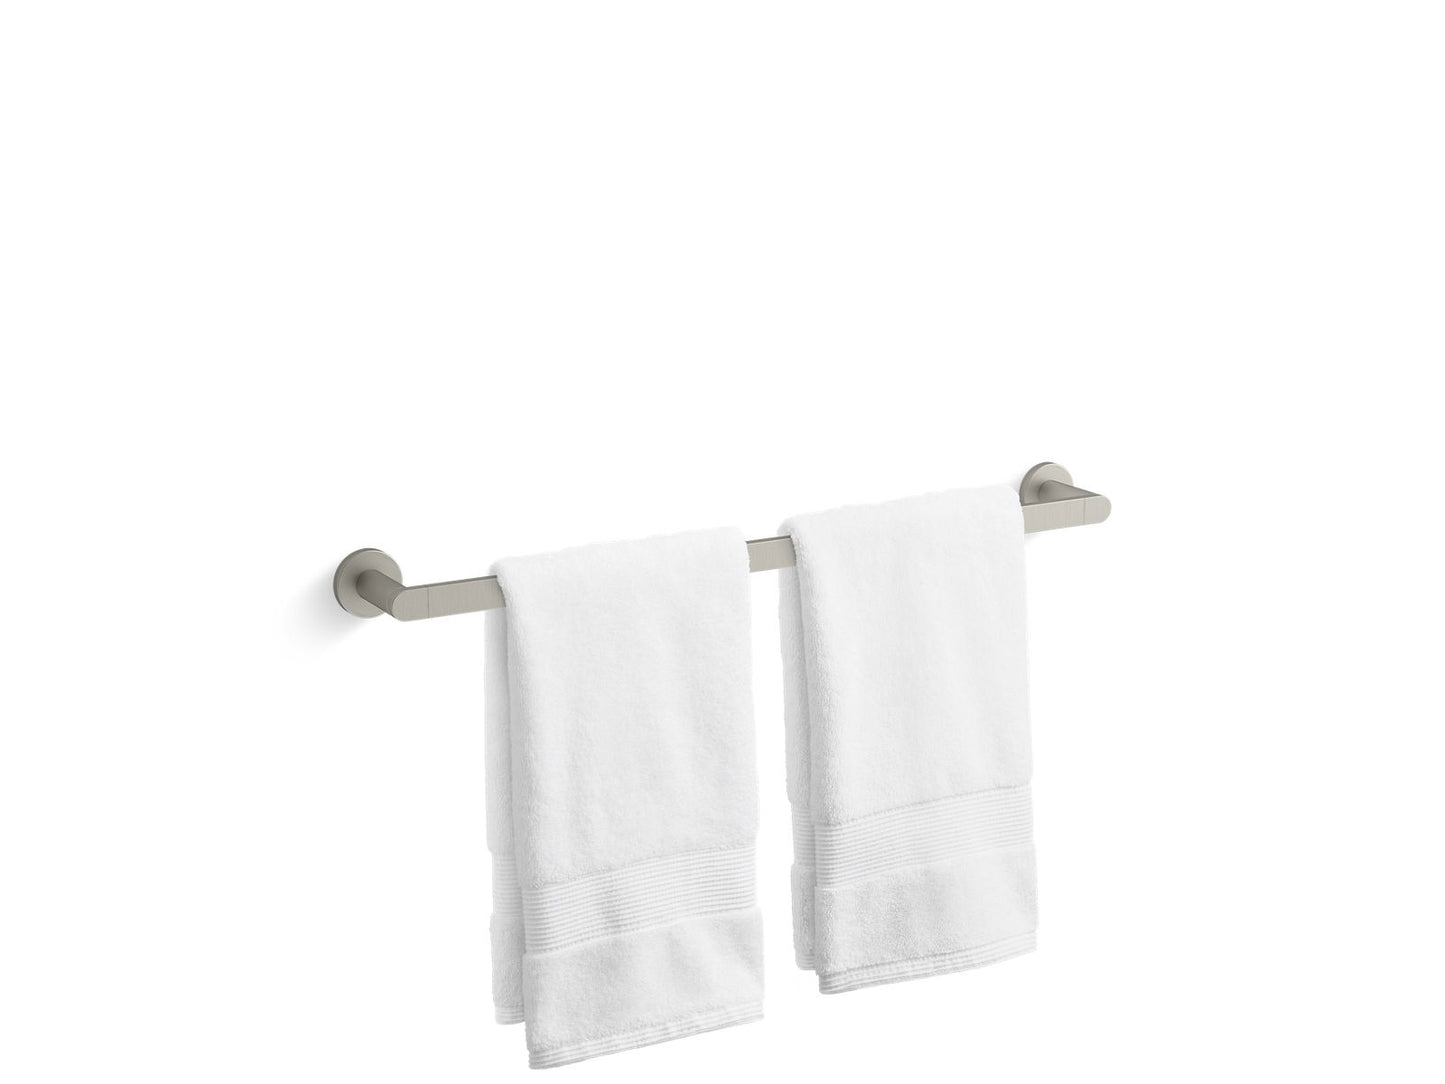 KOHLER K-73142-BN Composed 24" Towel Bar In Vibrant Brushed Nickel